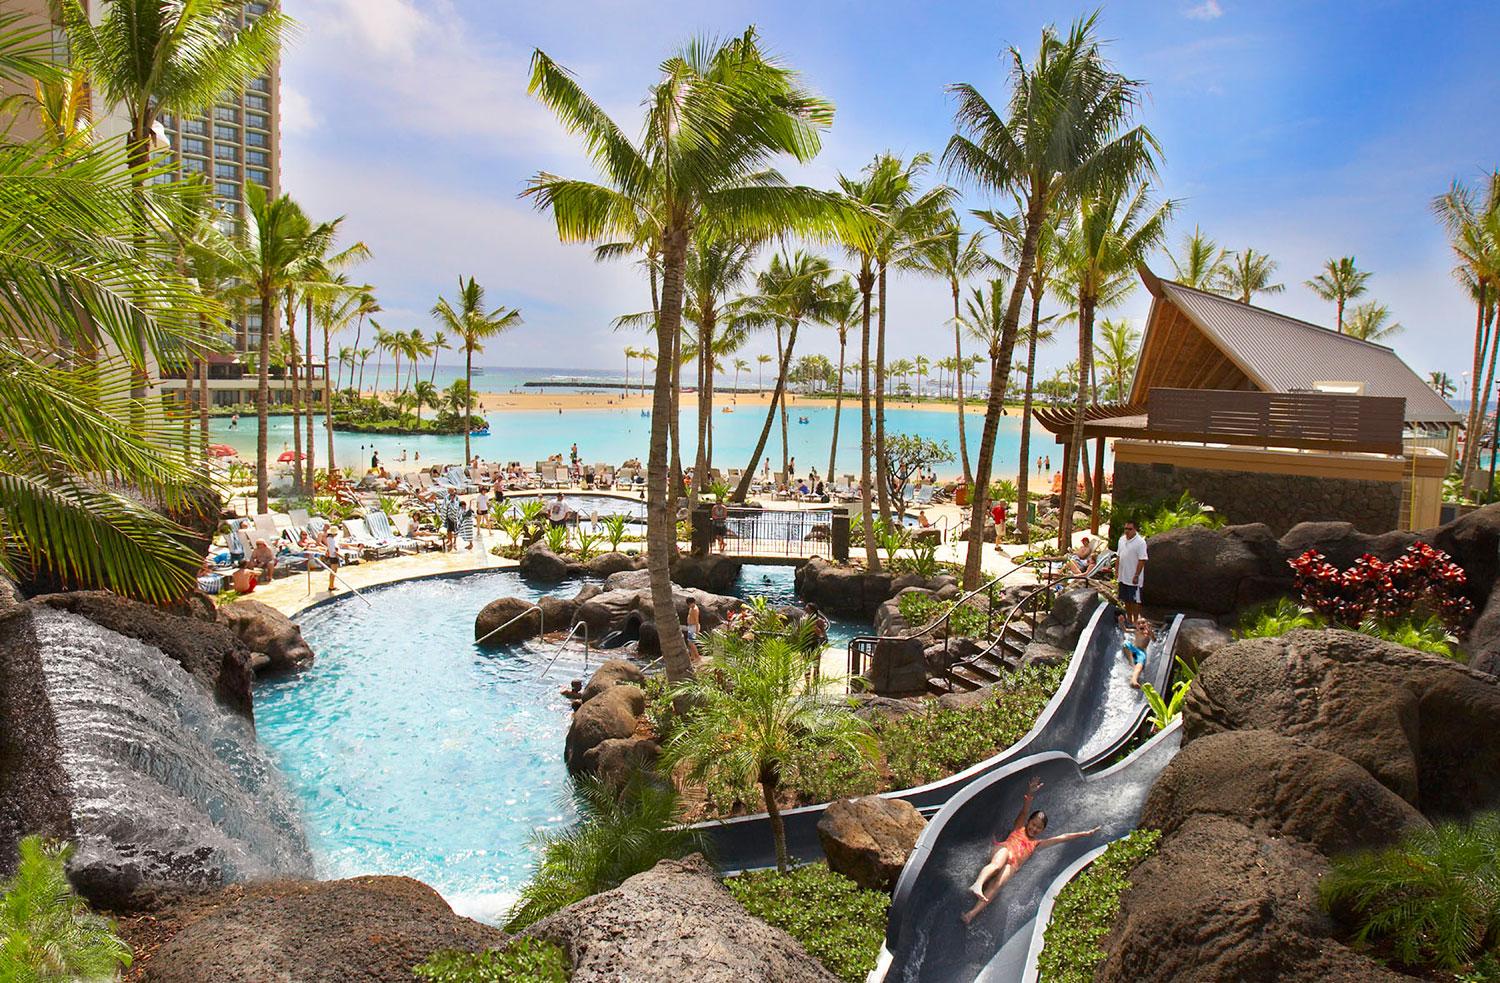 8. HILTON HAWAIIAN VILLAGE, HONOLULU, HAWAII, USA Hilton Hawaiian Village ligger på berömda Waikiki Beach, med prunknande trädgårdar, vattenfall, tropiska djur och värdefulla konstverk. För badsugna finns den unika saltvattenlagunen Duke Kahanamoku och fem pooler, inklusive en oändlighetspool. Paradpoolen är dock The Paradise Pool som har vattenfall, bubbelpooler, klippformationer av lava och fyra vattenrutschbanor. Andra aktiviteter är kurser där man lär dig knyta de typiska blomsterhalsbanden eller spela ukulele. Hotellrum från cirka 1680 kr/natt.